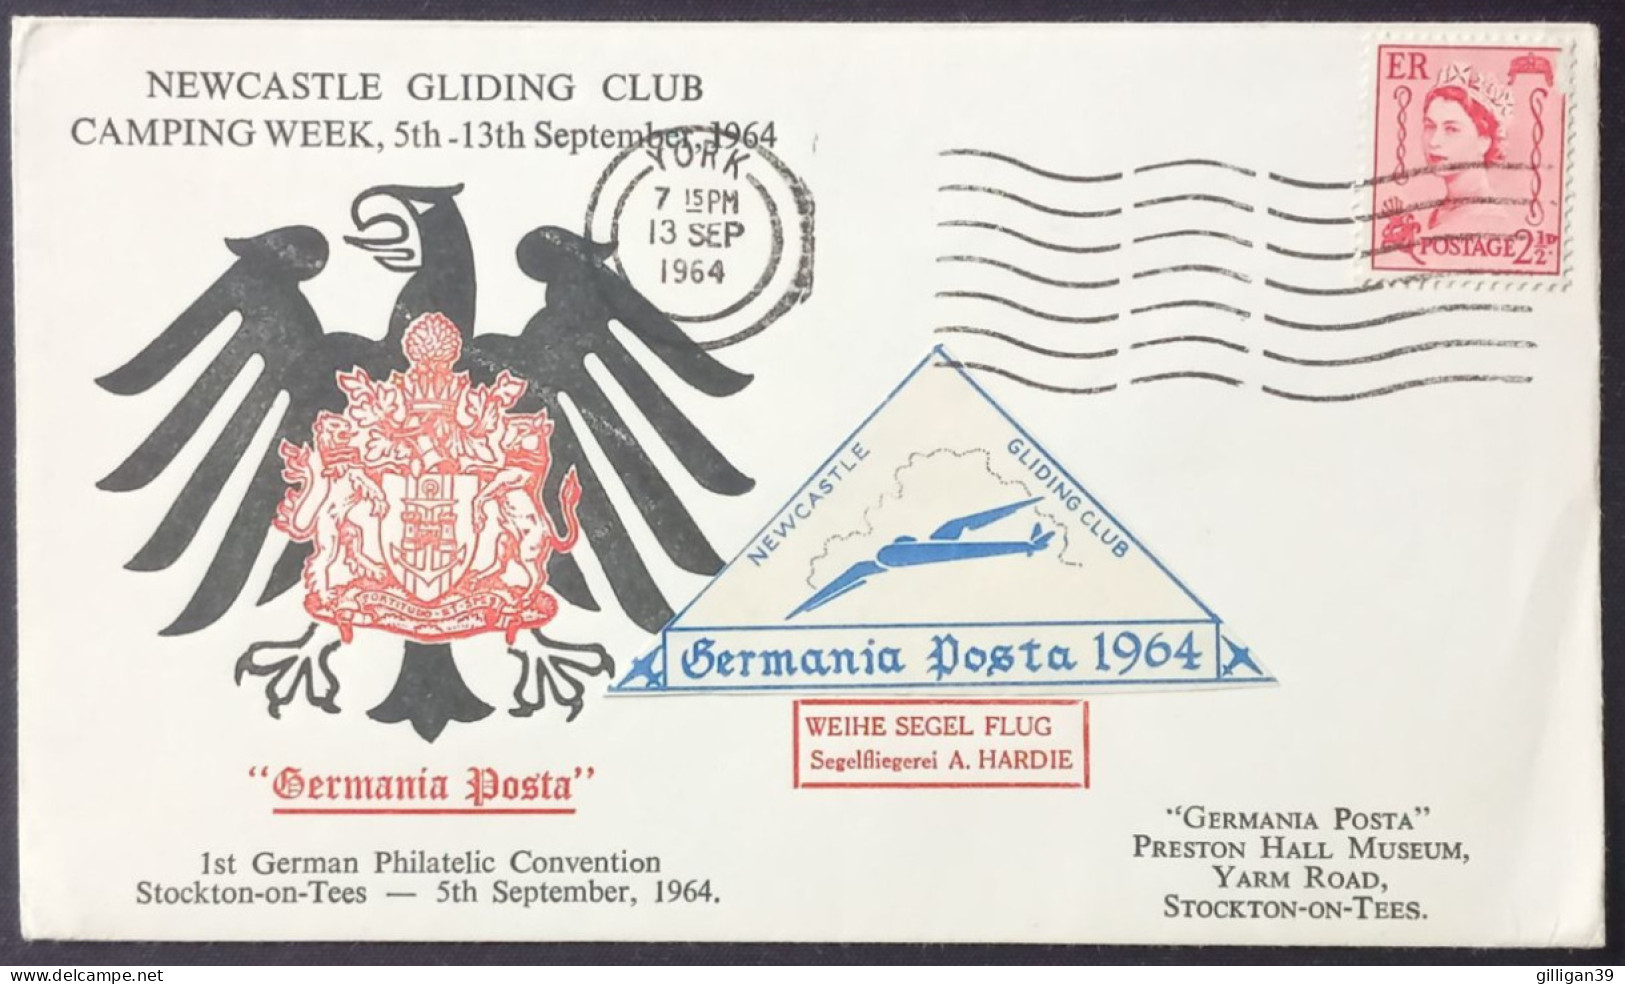 Newcastle Gliding Club, Camping Week, Stockton-on-Tees, Germania Posta 1964, Segelfliegerei A. Hardie, Poststempel YORK - Airplanes